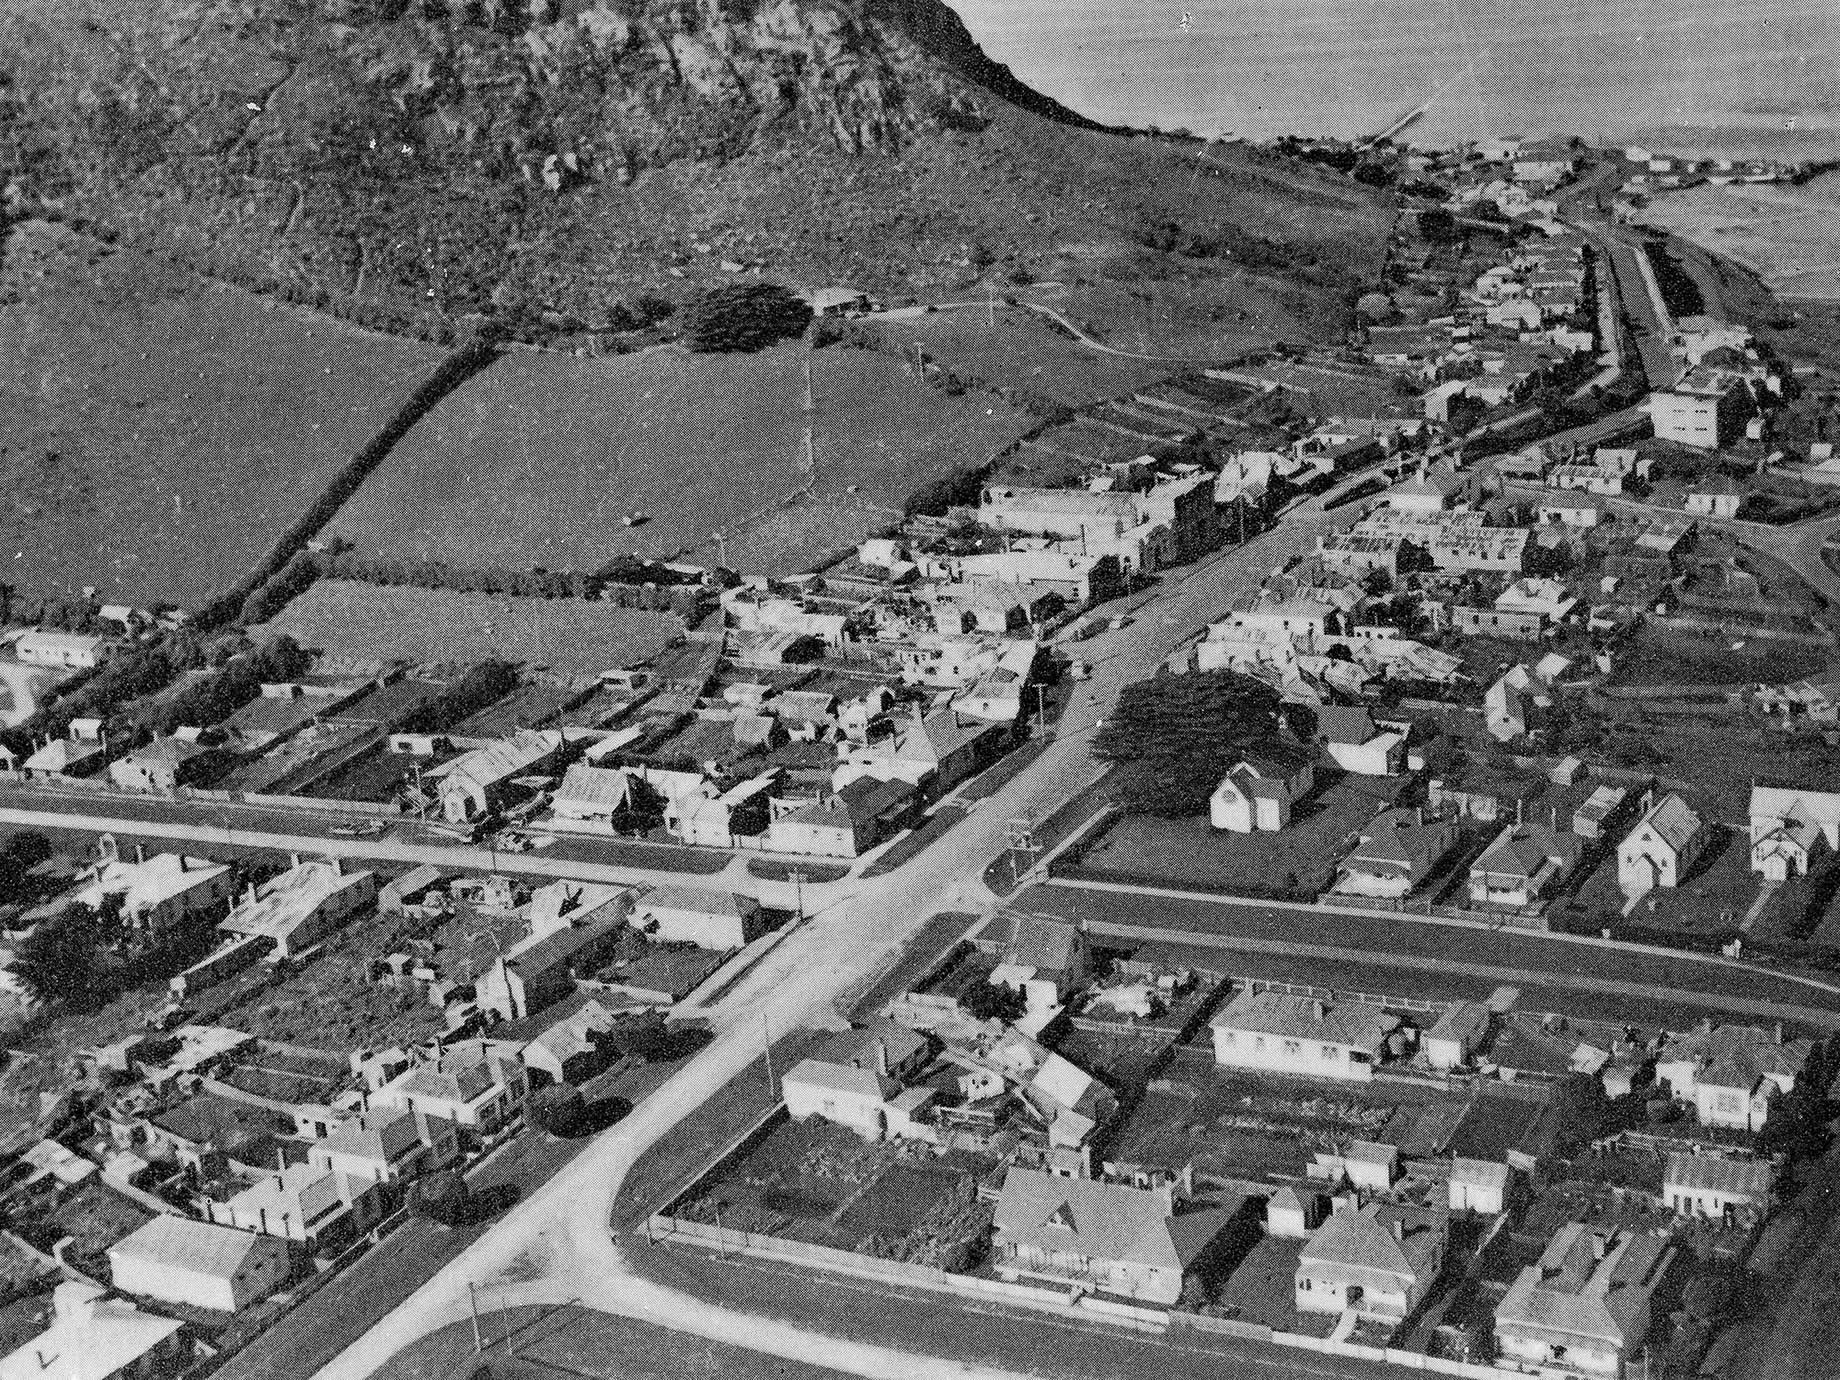 Vue aérienne du village de Stanley autour de The Nut, vers 1940